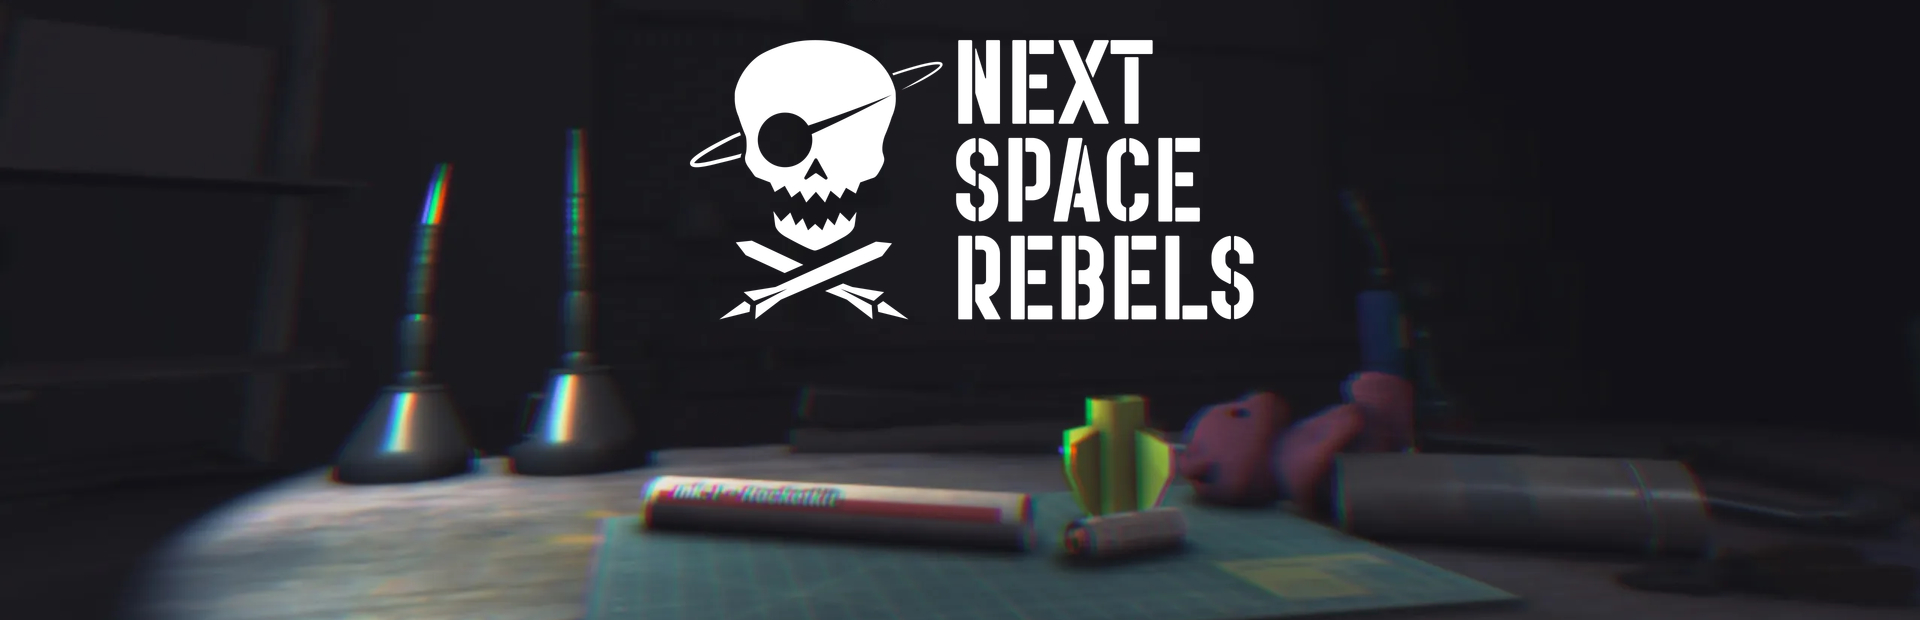 دانلود بازی Next Space Rebels برای پی سی | گیمباتو